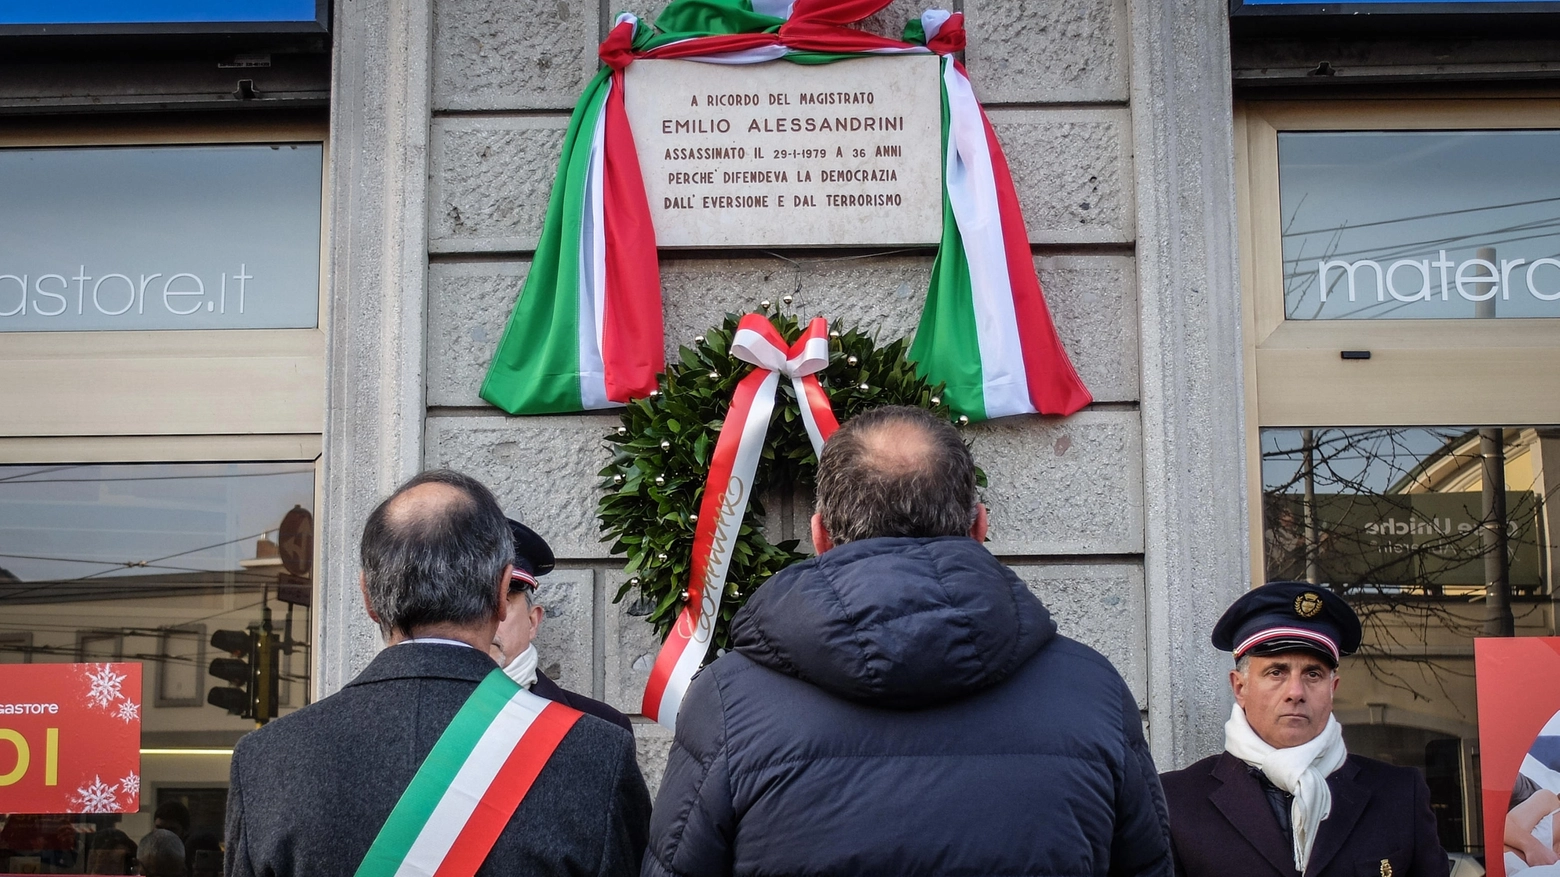 Di spalle il sindaco Sala e a destra il figlio di Emilio Alessandrini, Marco, davanti alla targa commemorativa tra viale Umbria e via Muratori